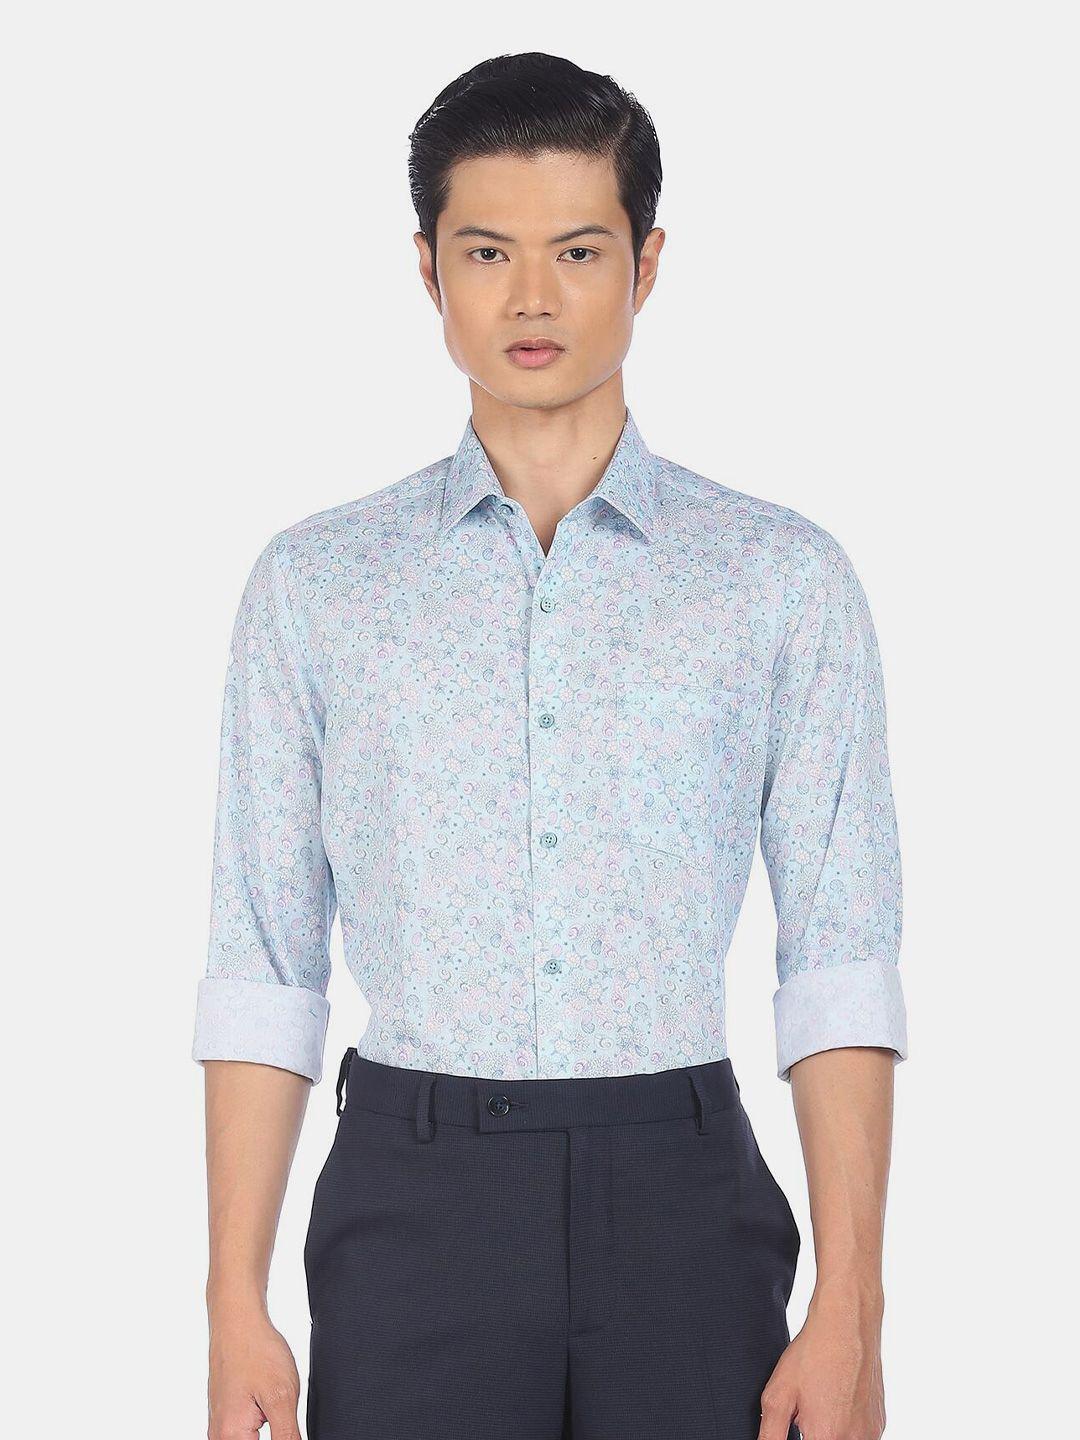 arrow men blue slim fit floral printed cotton casual shirt